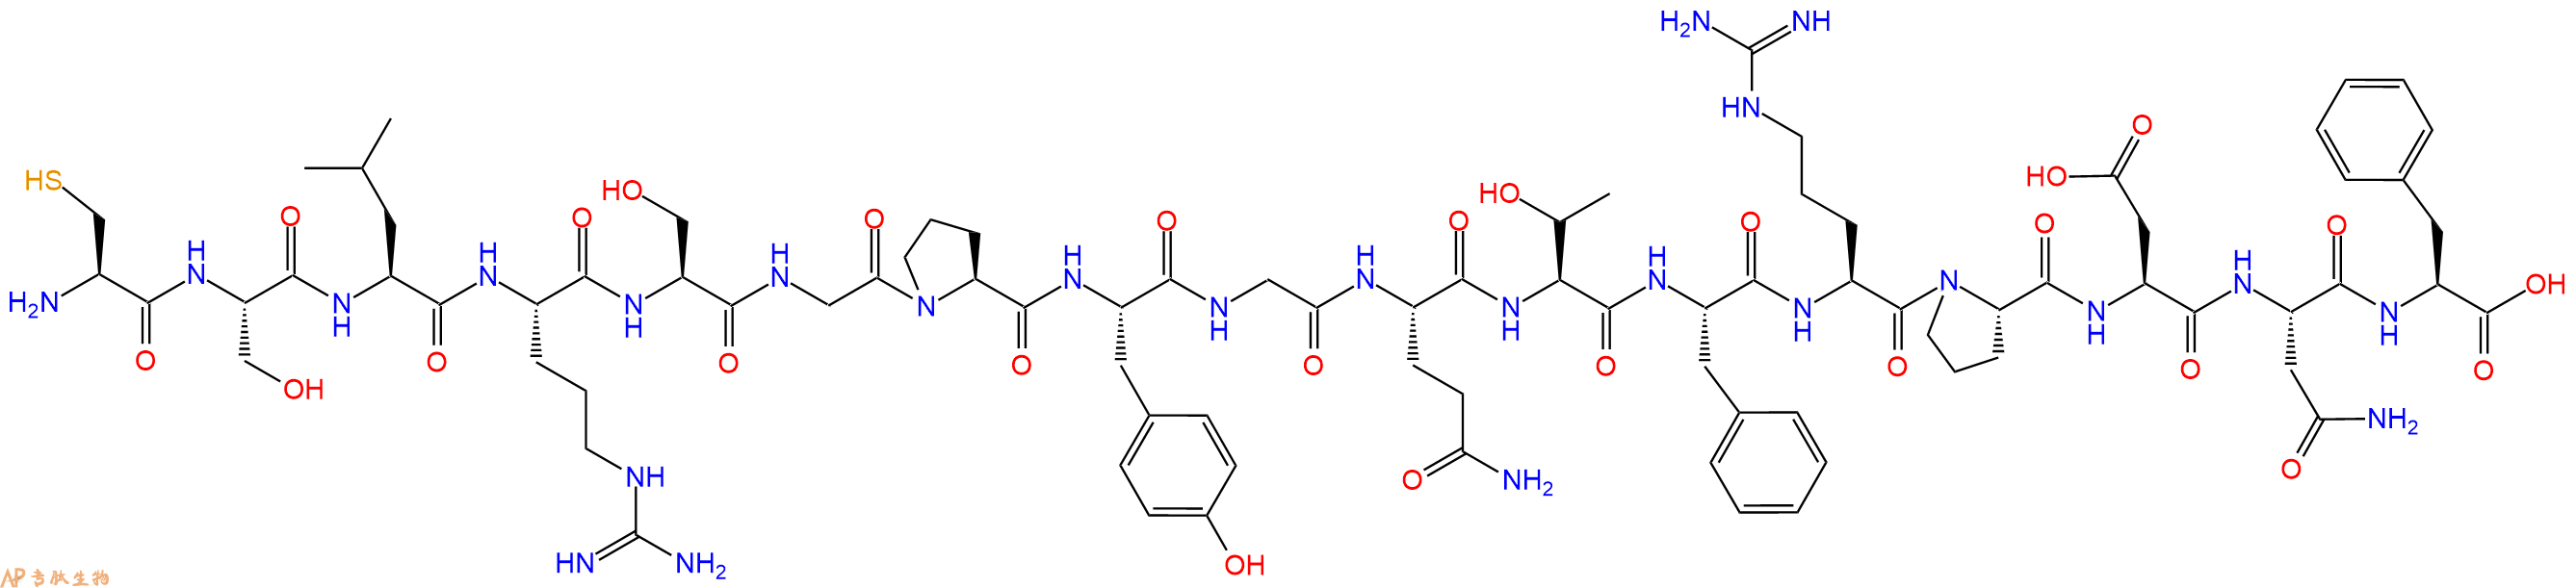 专肽生物产品十七肽CSLRSGPYGQTFRPDNF